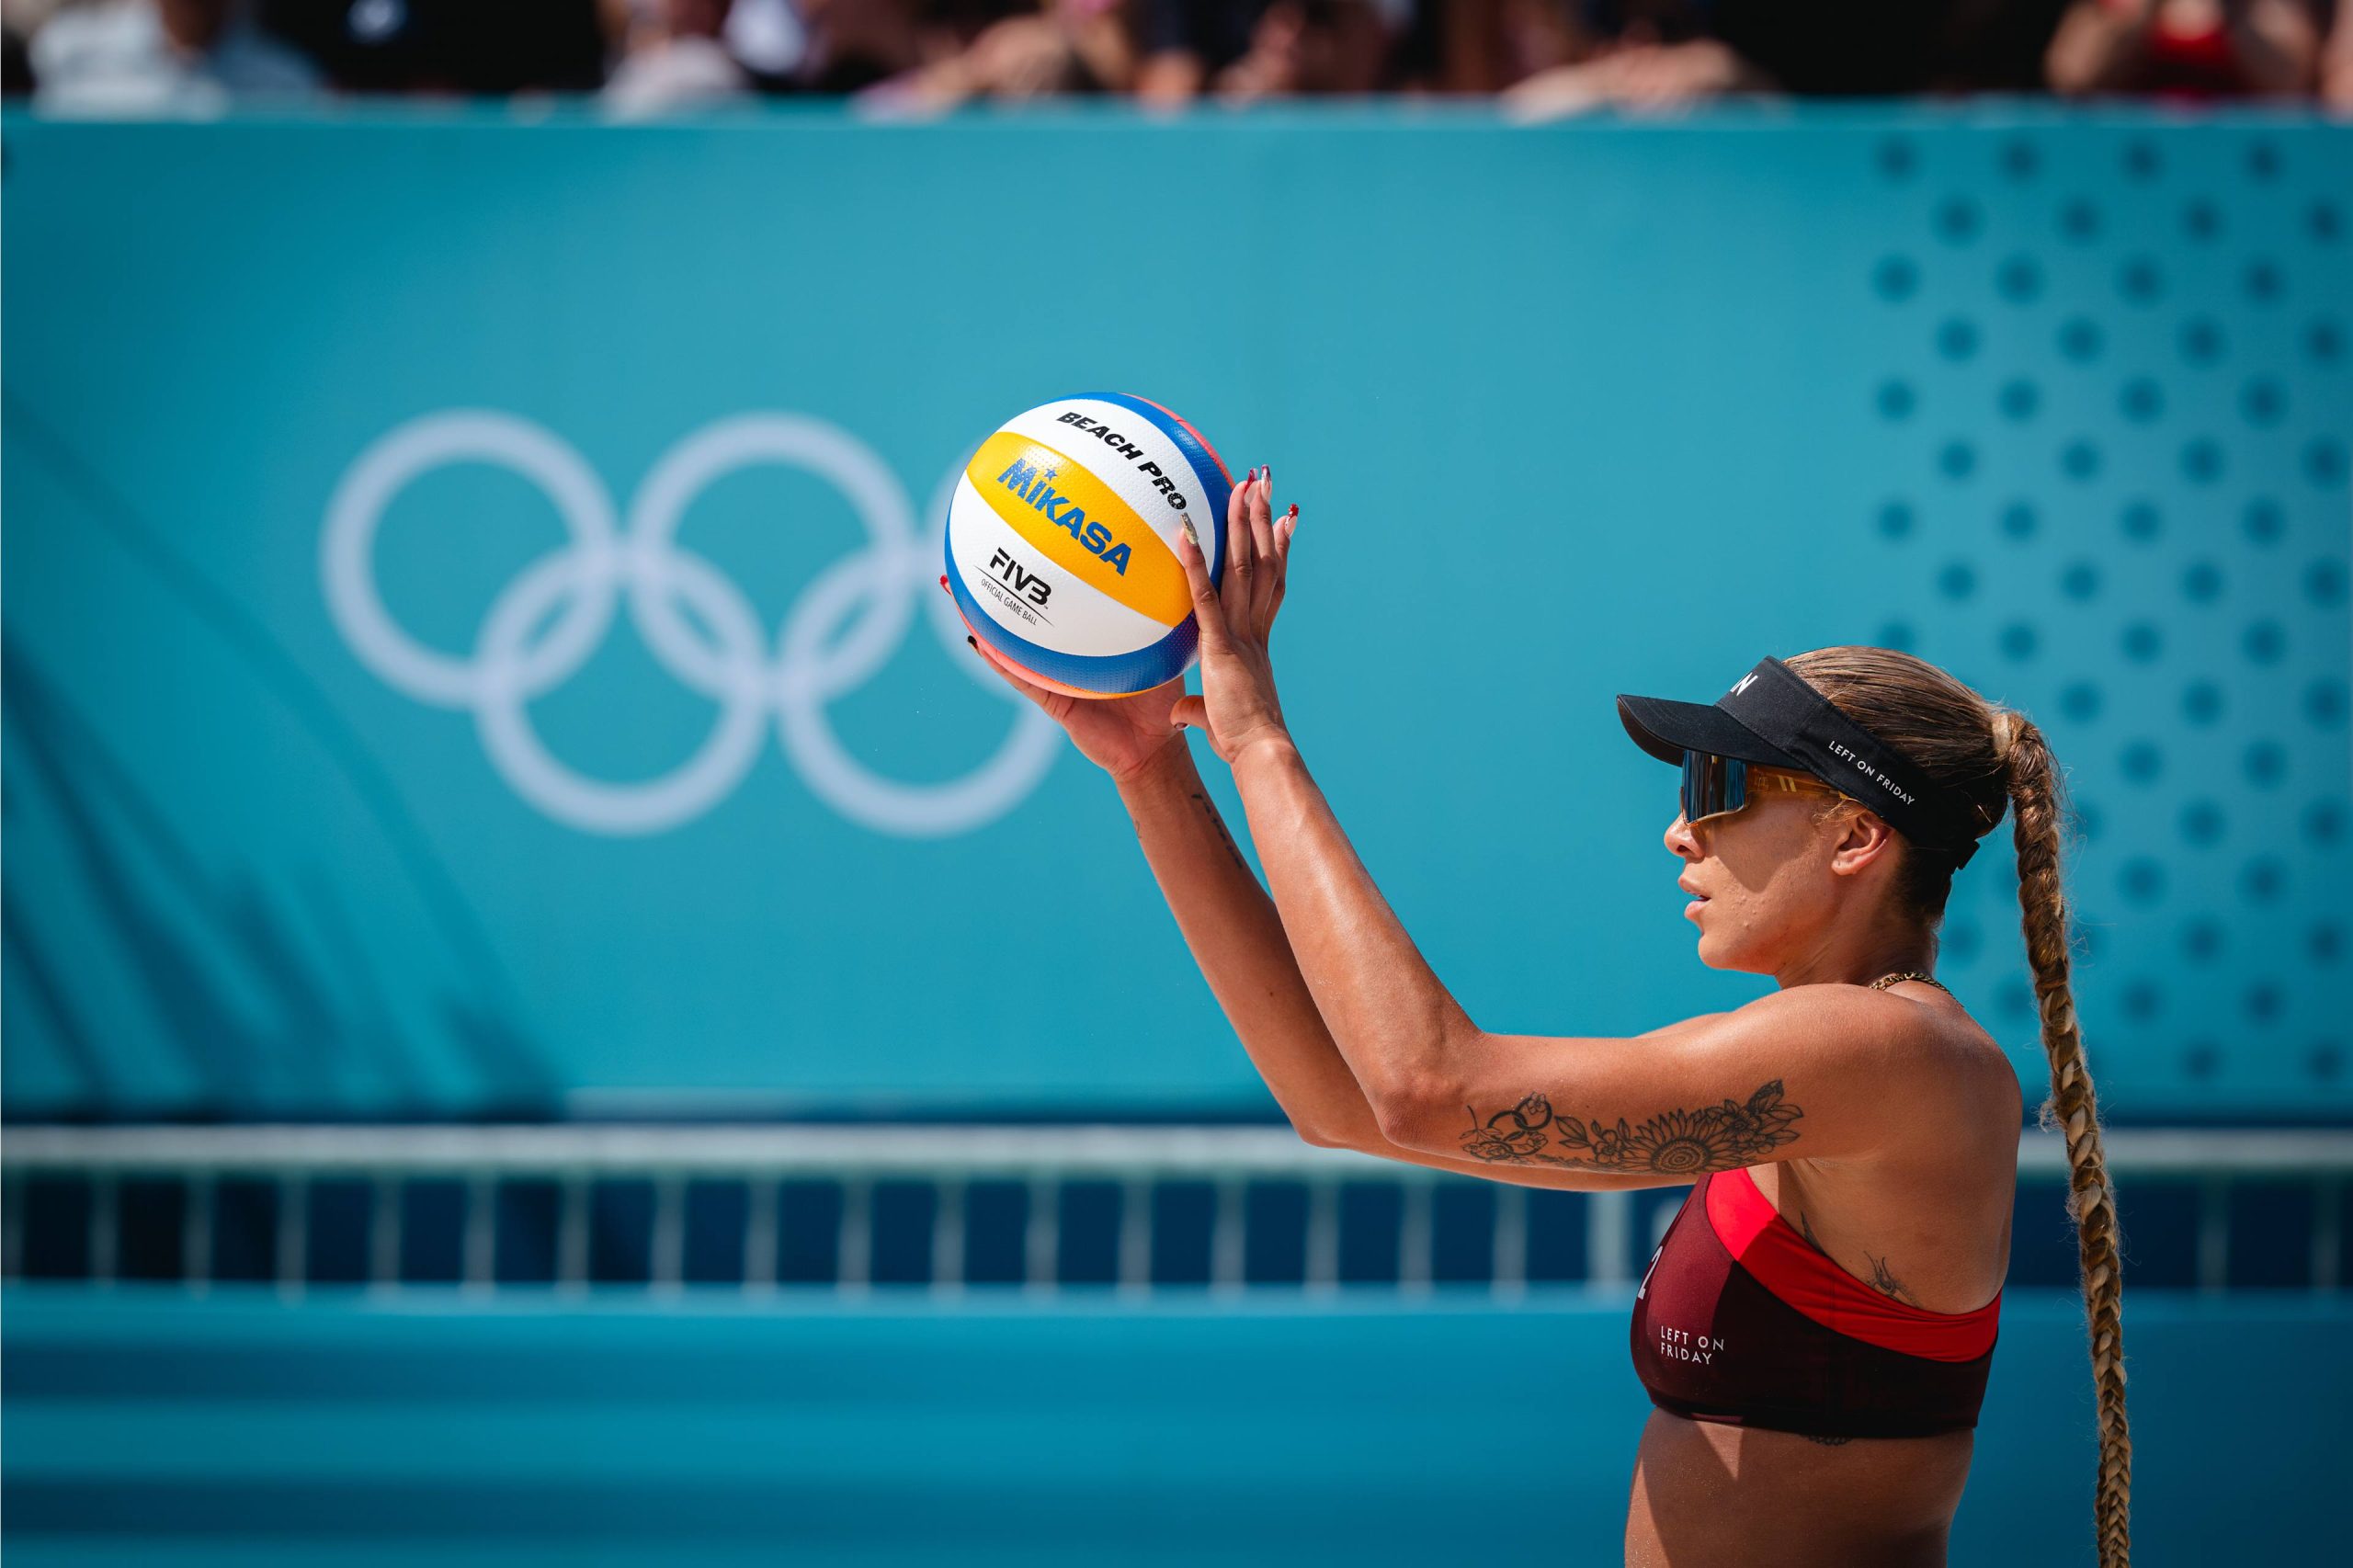 O vôlei de praia é uma das grandes esperanças de medalha do Brasil em Paris (Foto: Divulgação / FIVB - Volleyball World)